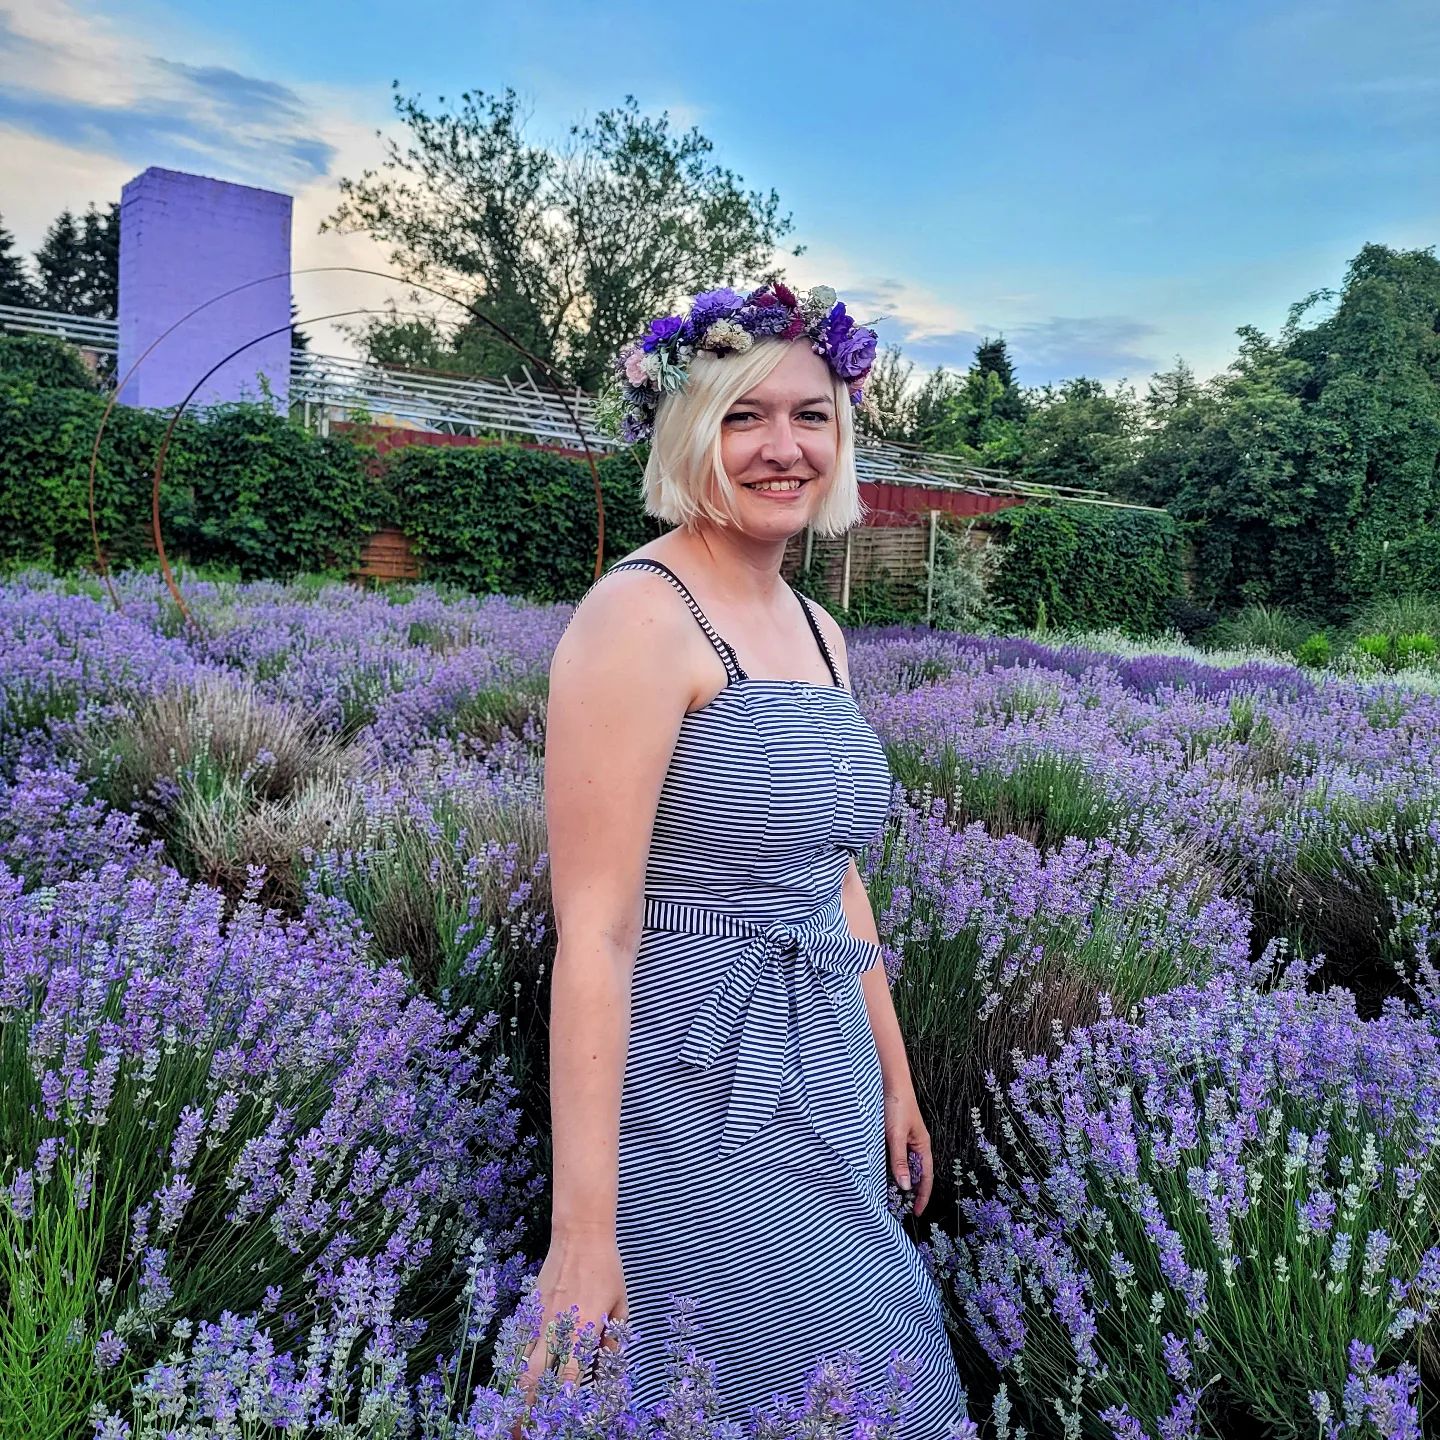 Lavendelliebe 🌿🌾

Hach, dieser Duft. Wenn man die Augen schließt könnte man meinen, man wäre im Urlaub in der Provence! Wer ist auch so ein großer Lavendel-Fan?
_______________

#Lavendel #lavendelfeld #hortensiaalpen #midsommar #mittsommer #niederrhein #alpen #niederrheinliebe